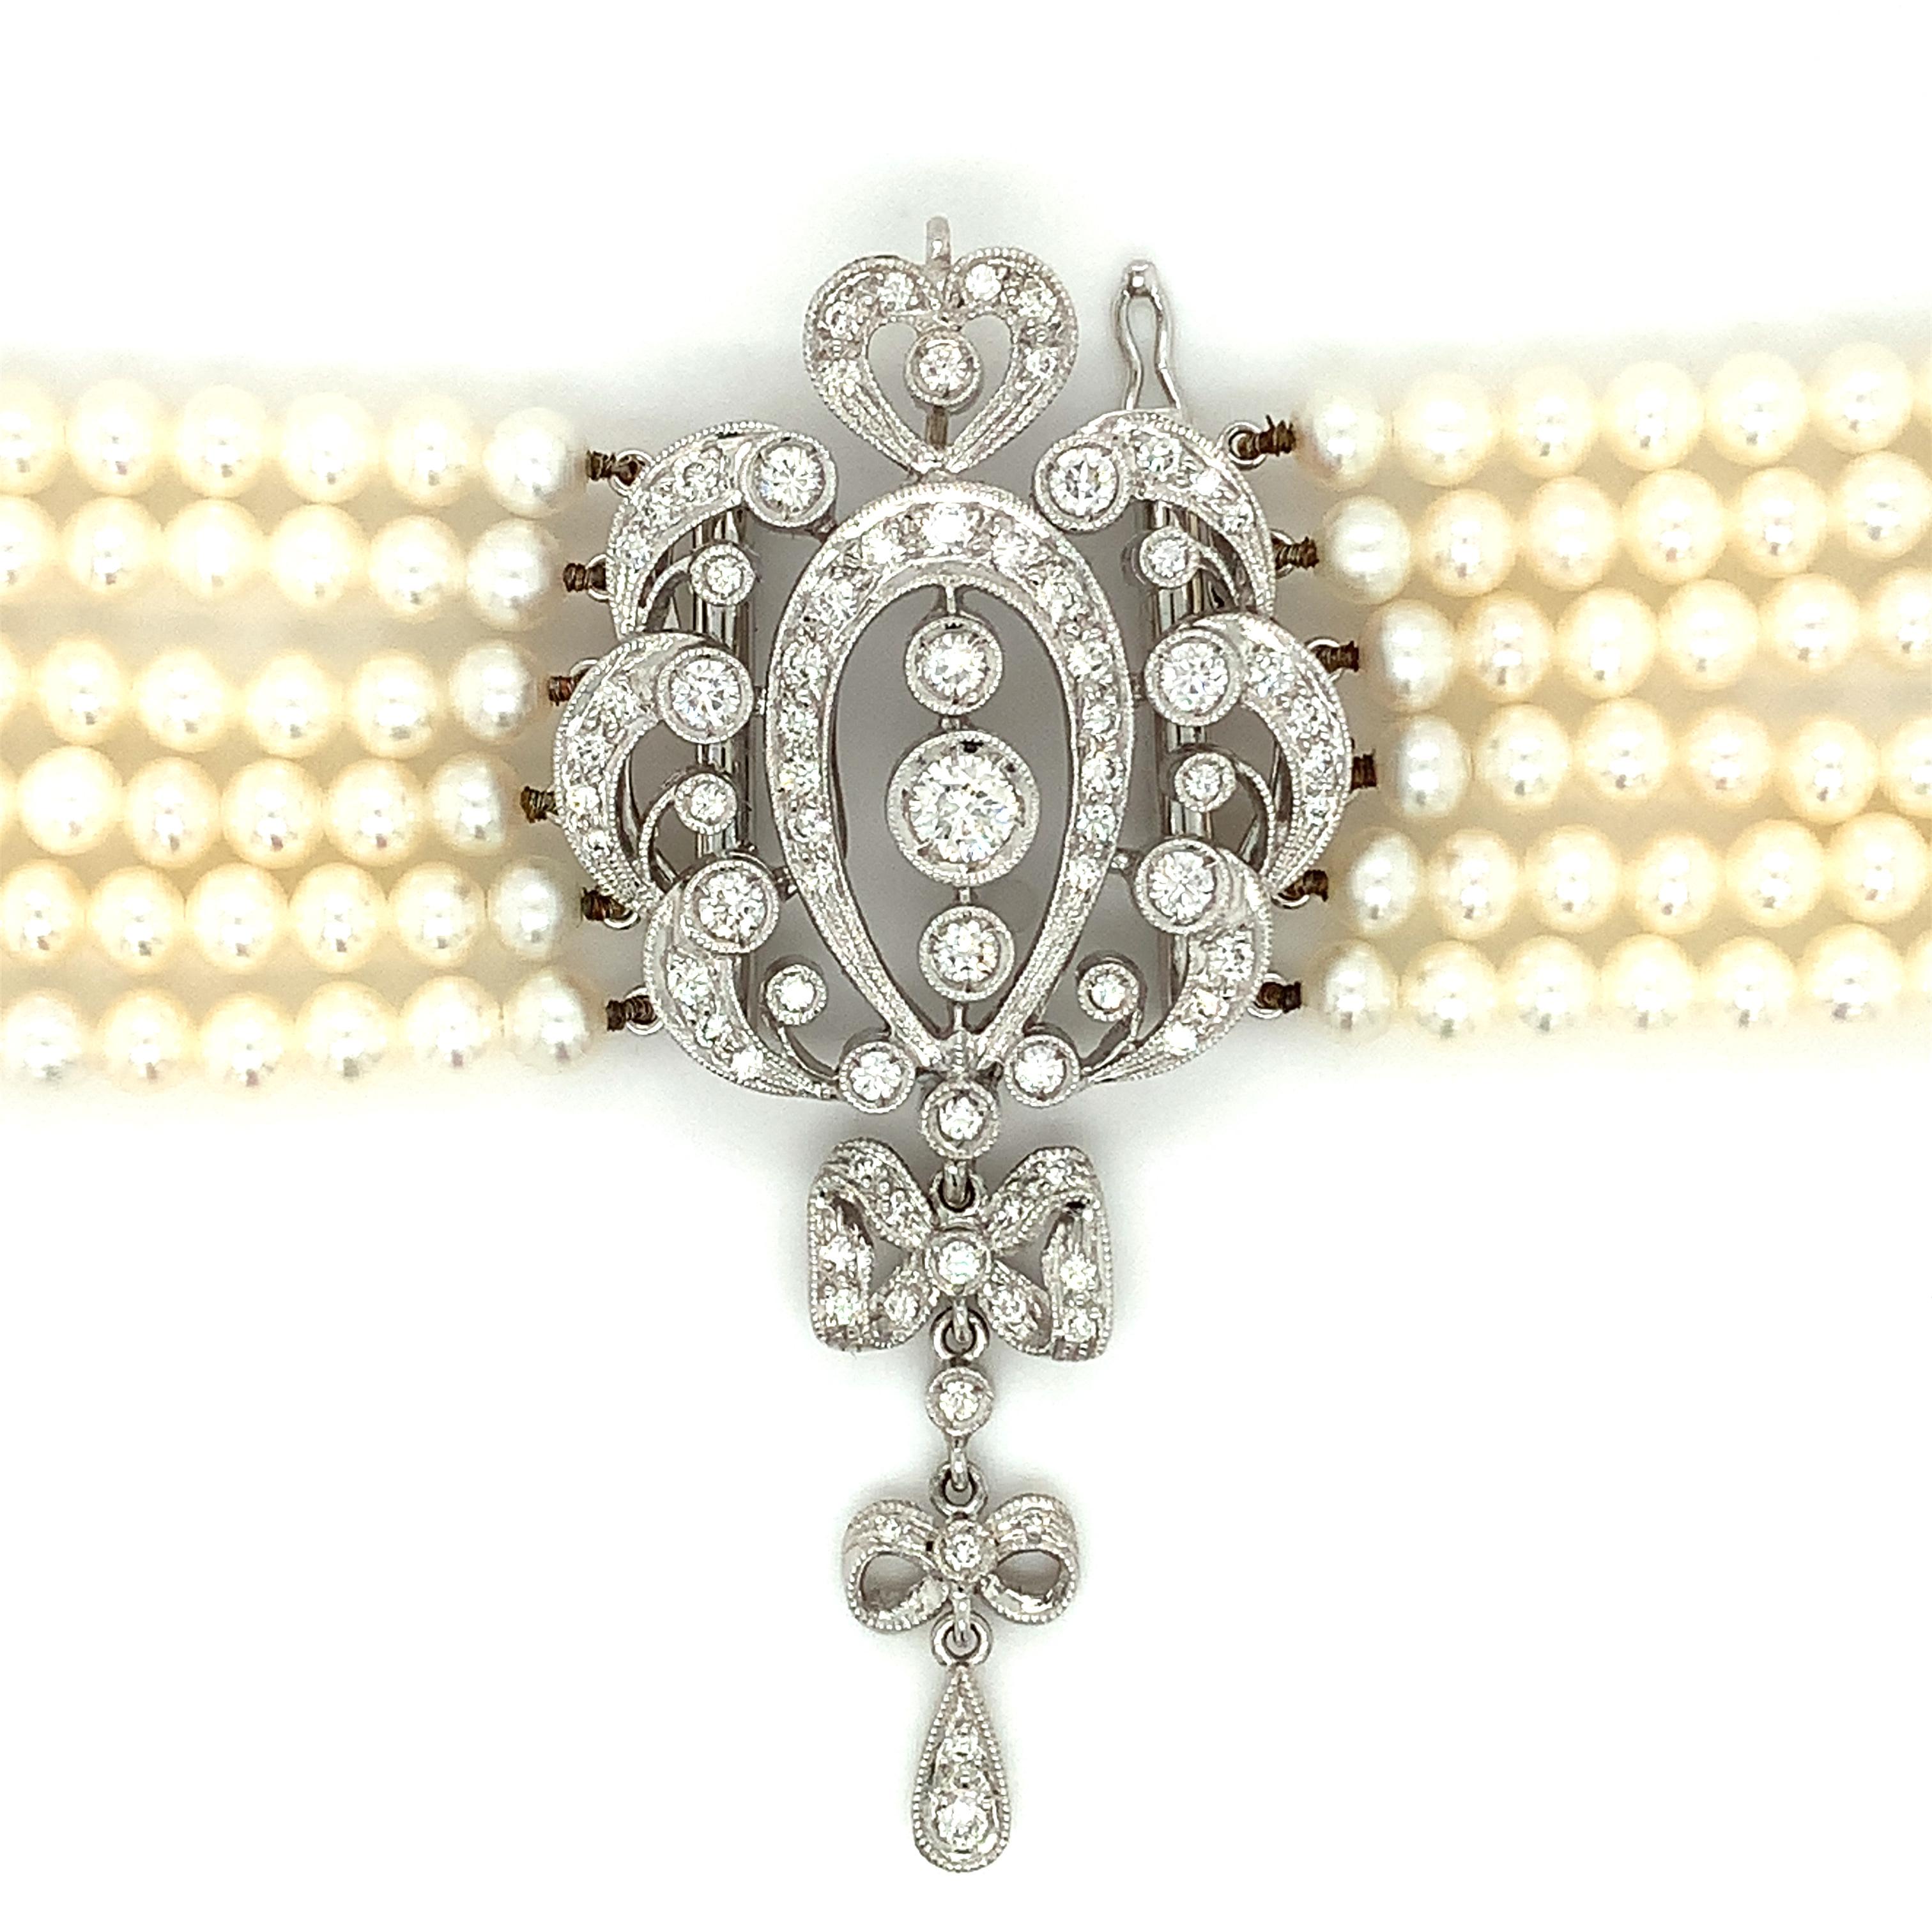 Magnifique collier ras de cou de style art déco en diamants et perles en or blanc 18ct.
Composée d'un diamant rond brillant de 2,50ct et de perles de culture de forme ronde de couleur blanc crème, le tout serti dans de l'or blanc 18ct.
Magnifique